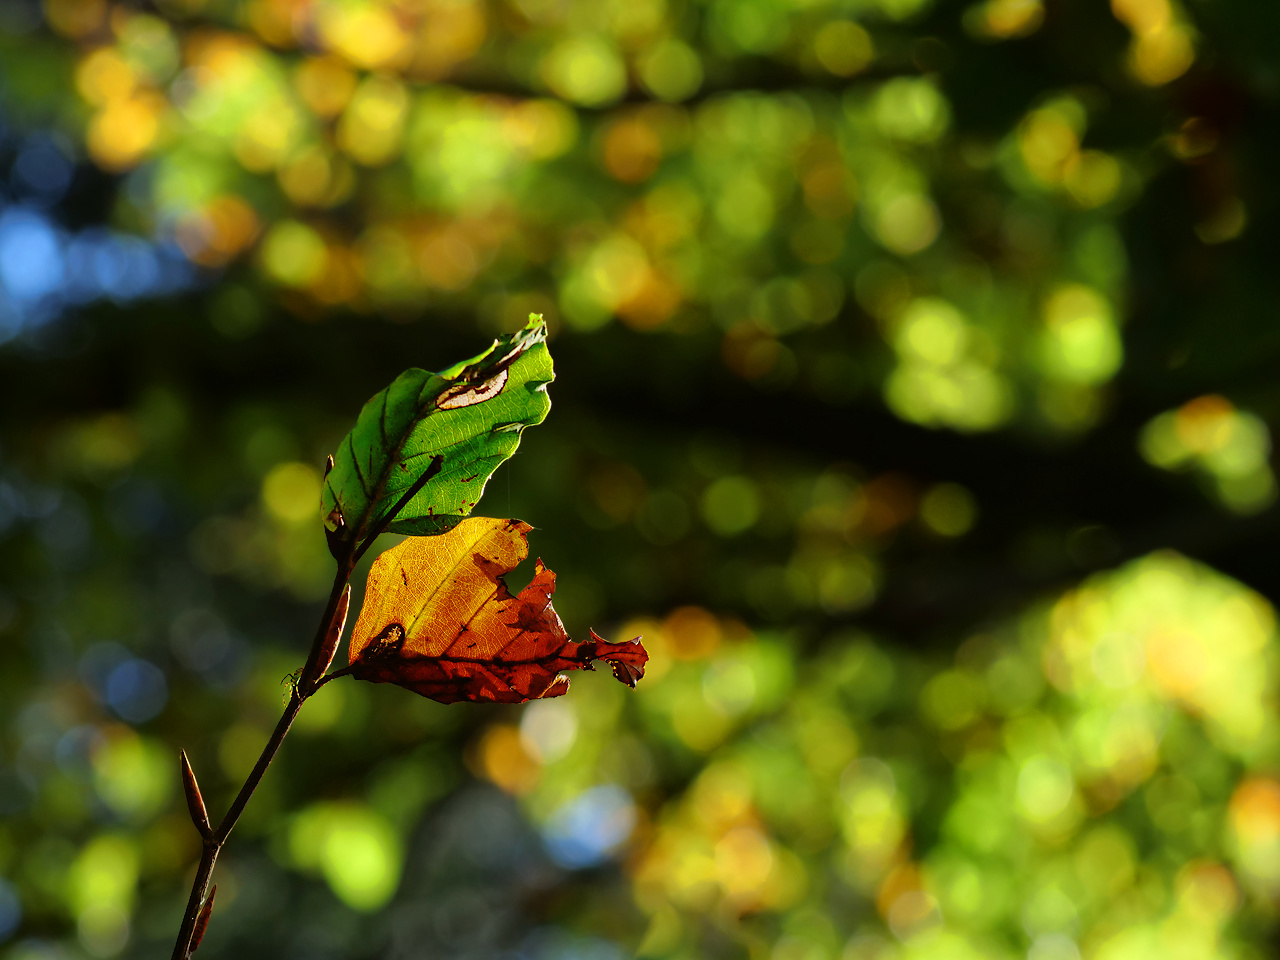 Froschblatt mit Herbstblatt